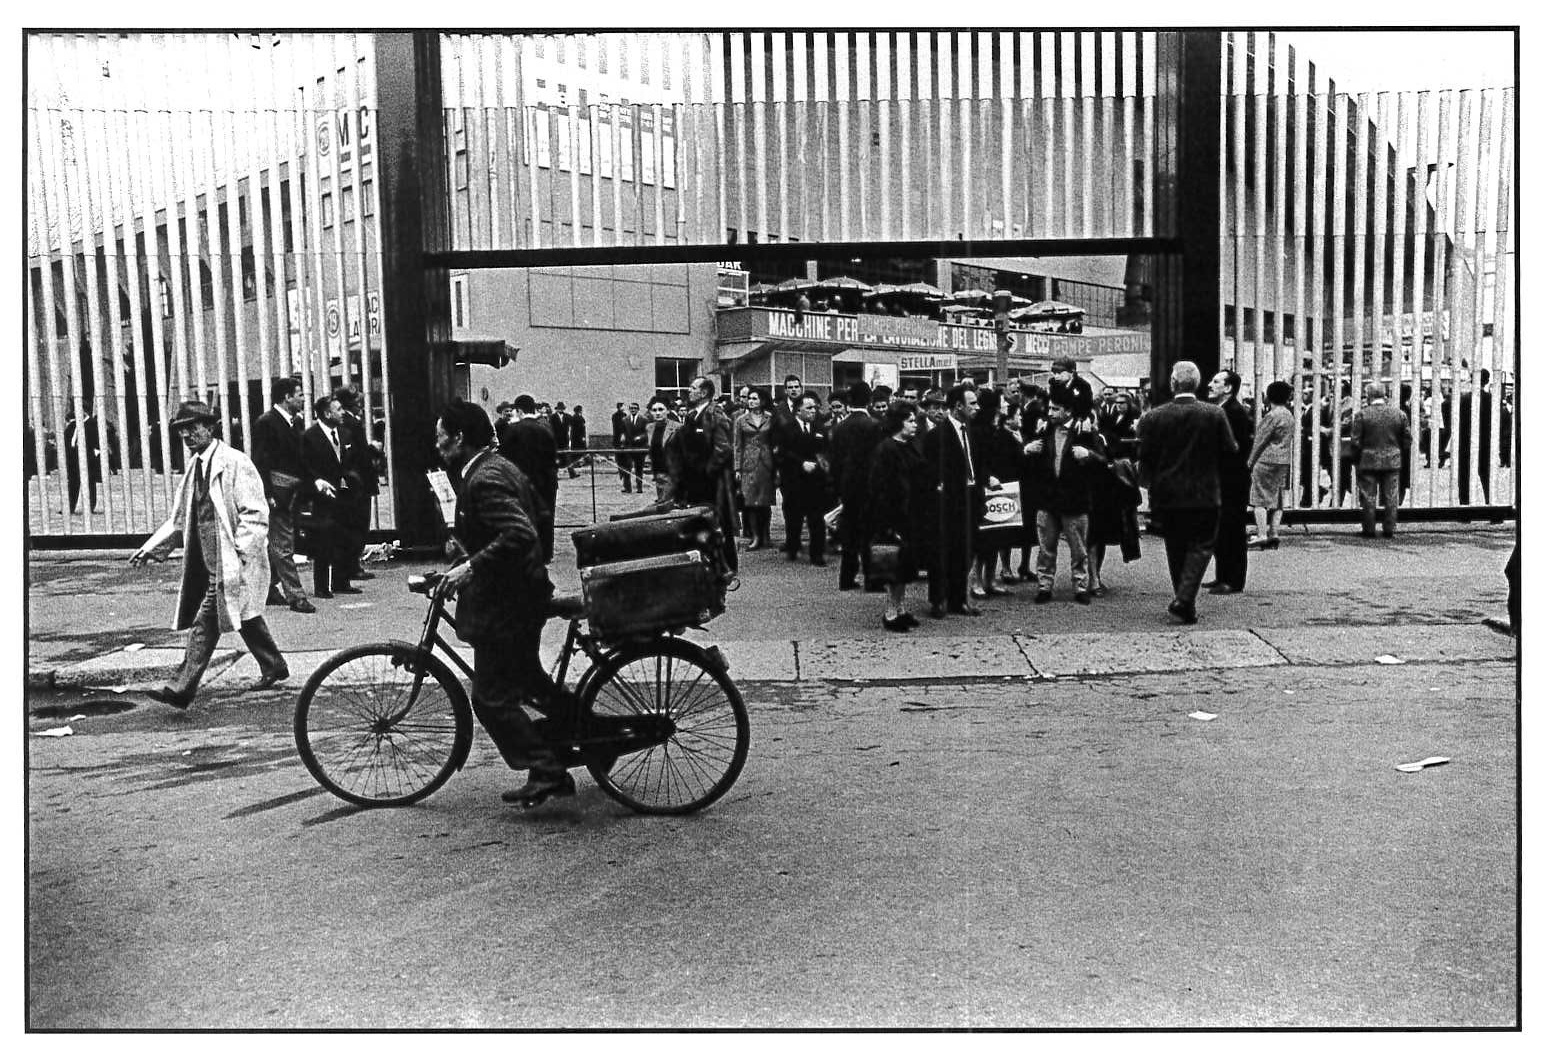   Fiera Campionaria, esistevano ancora i cinesi venditori di cravatte ambulanti. Milano, 1964.  